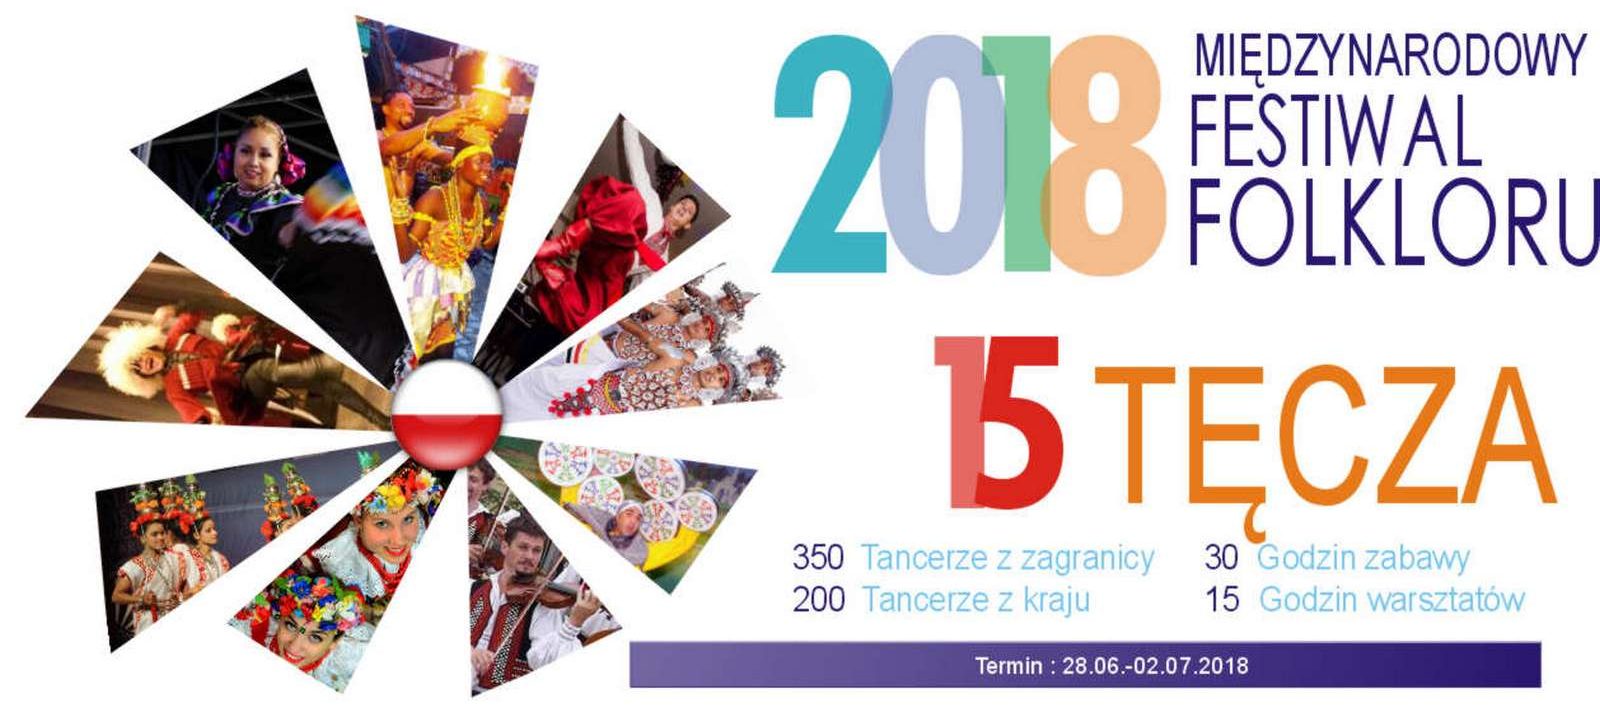 Międzynarodowy Festiwal Folkloru  Tęcza 2018